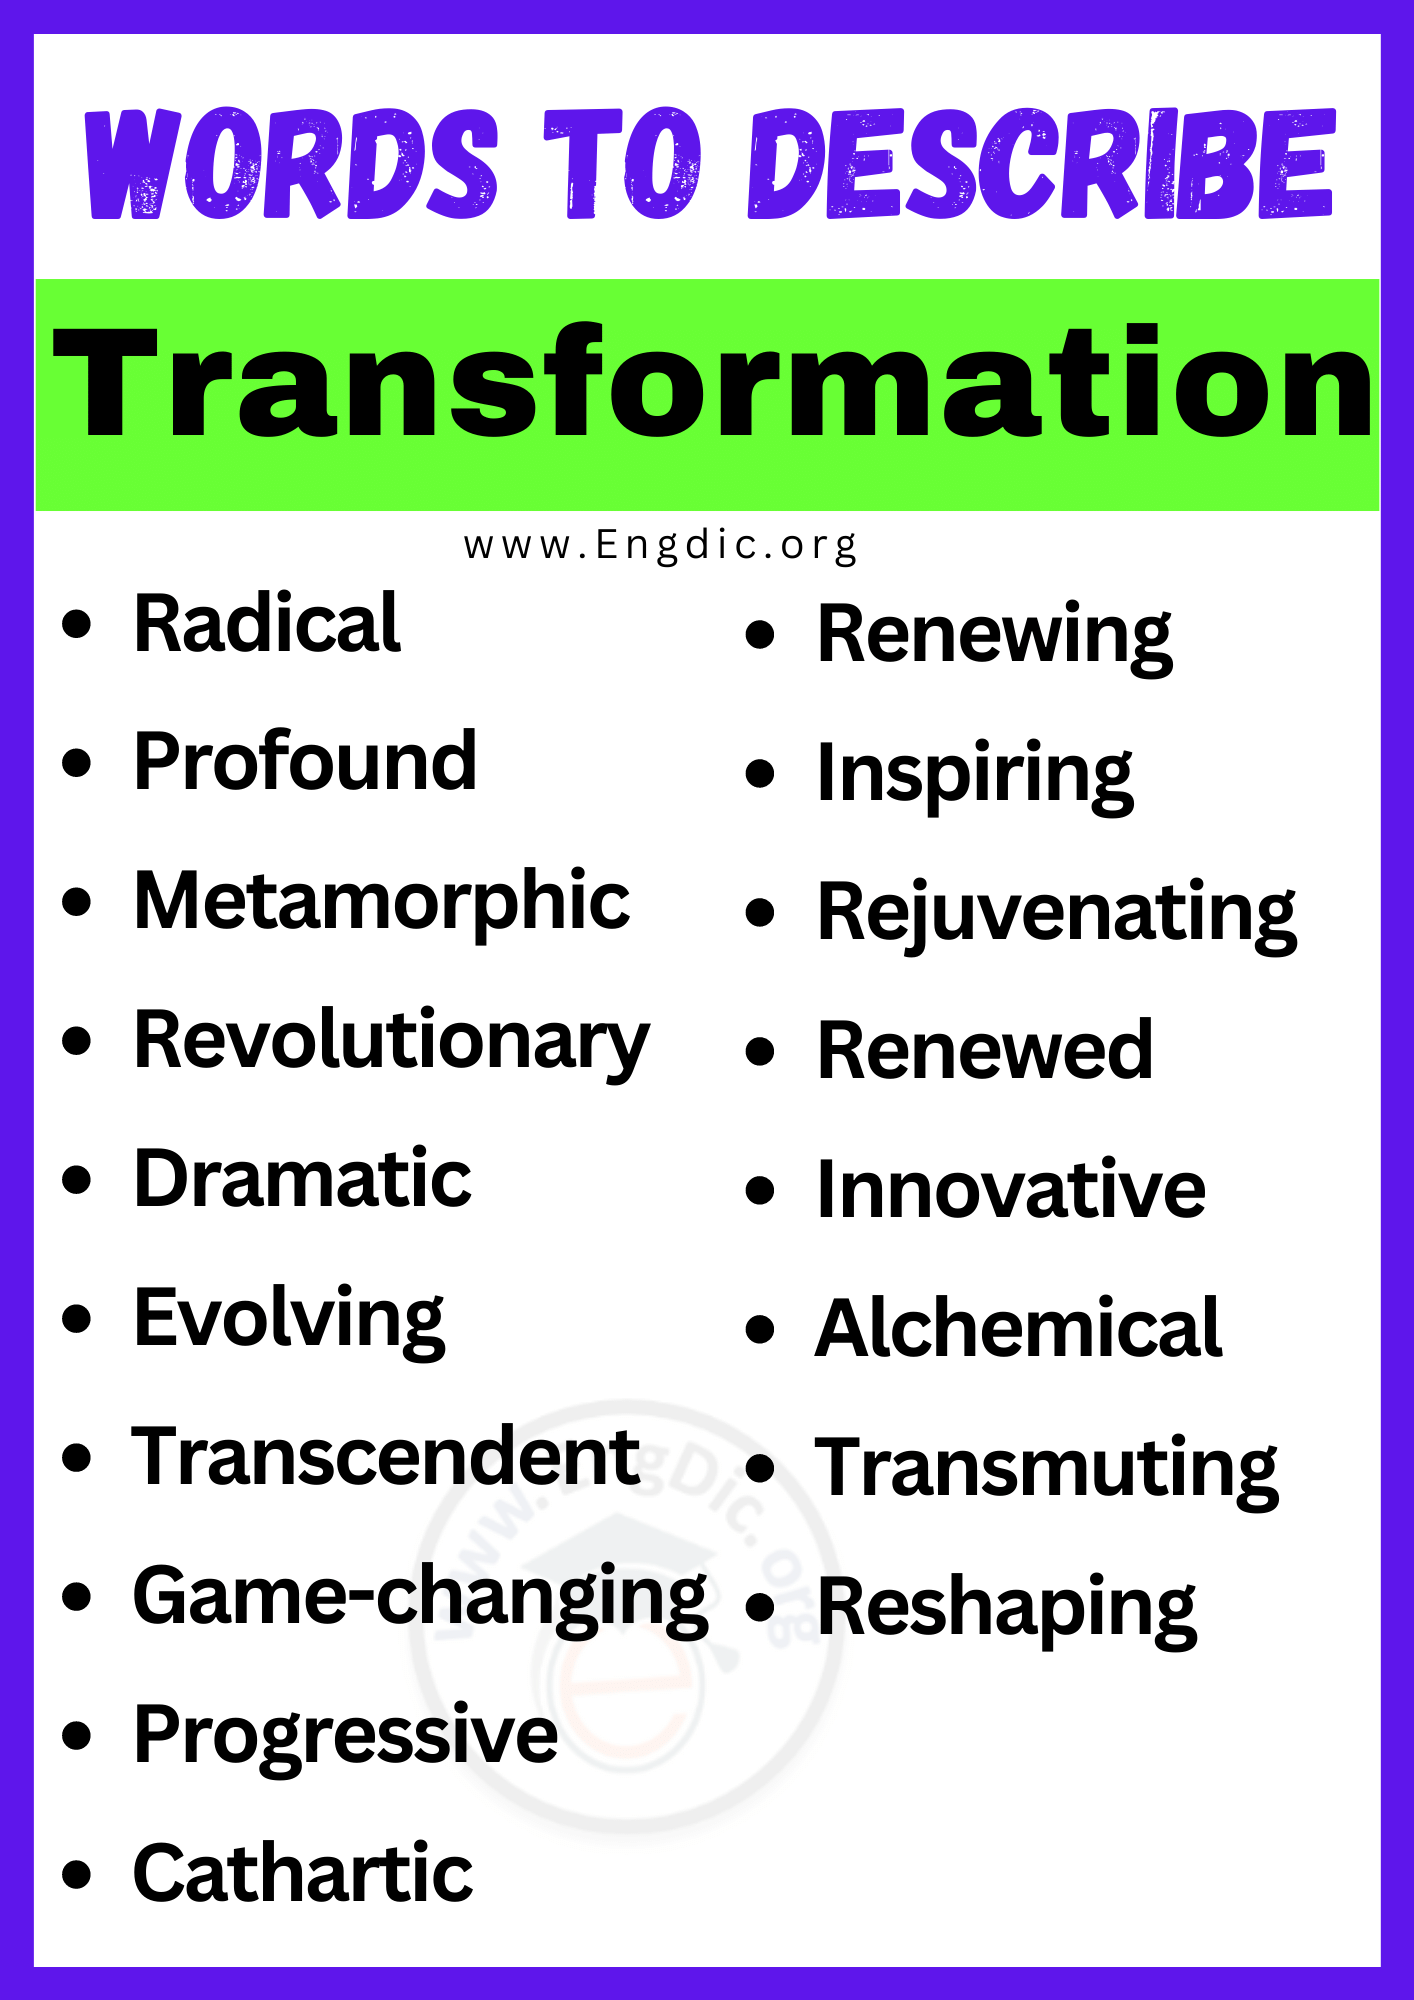 Words to Describe Transformation